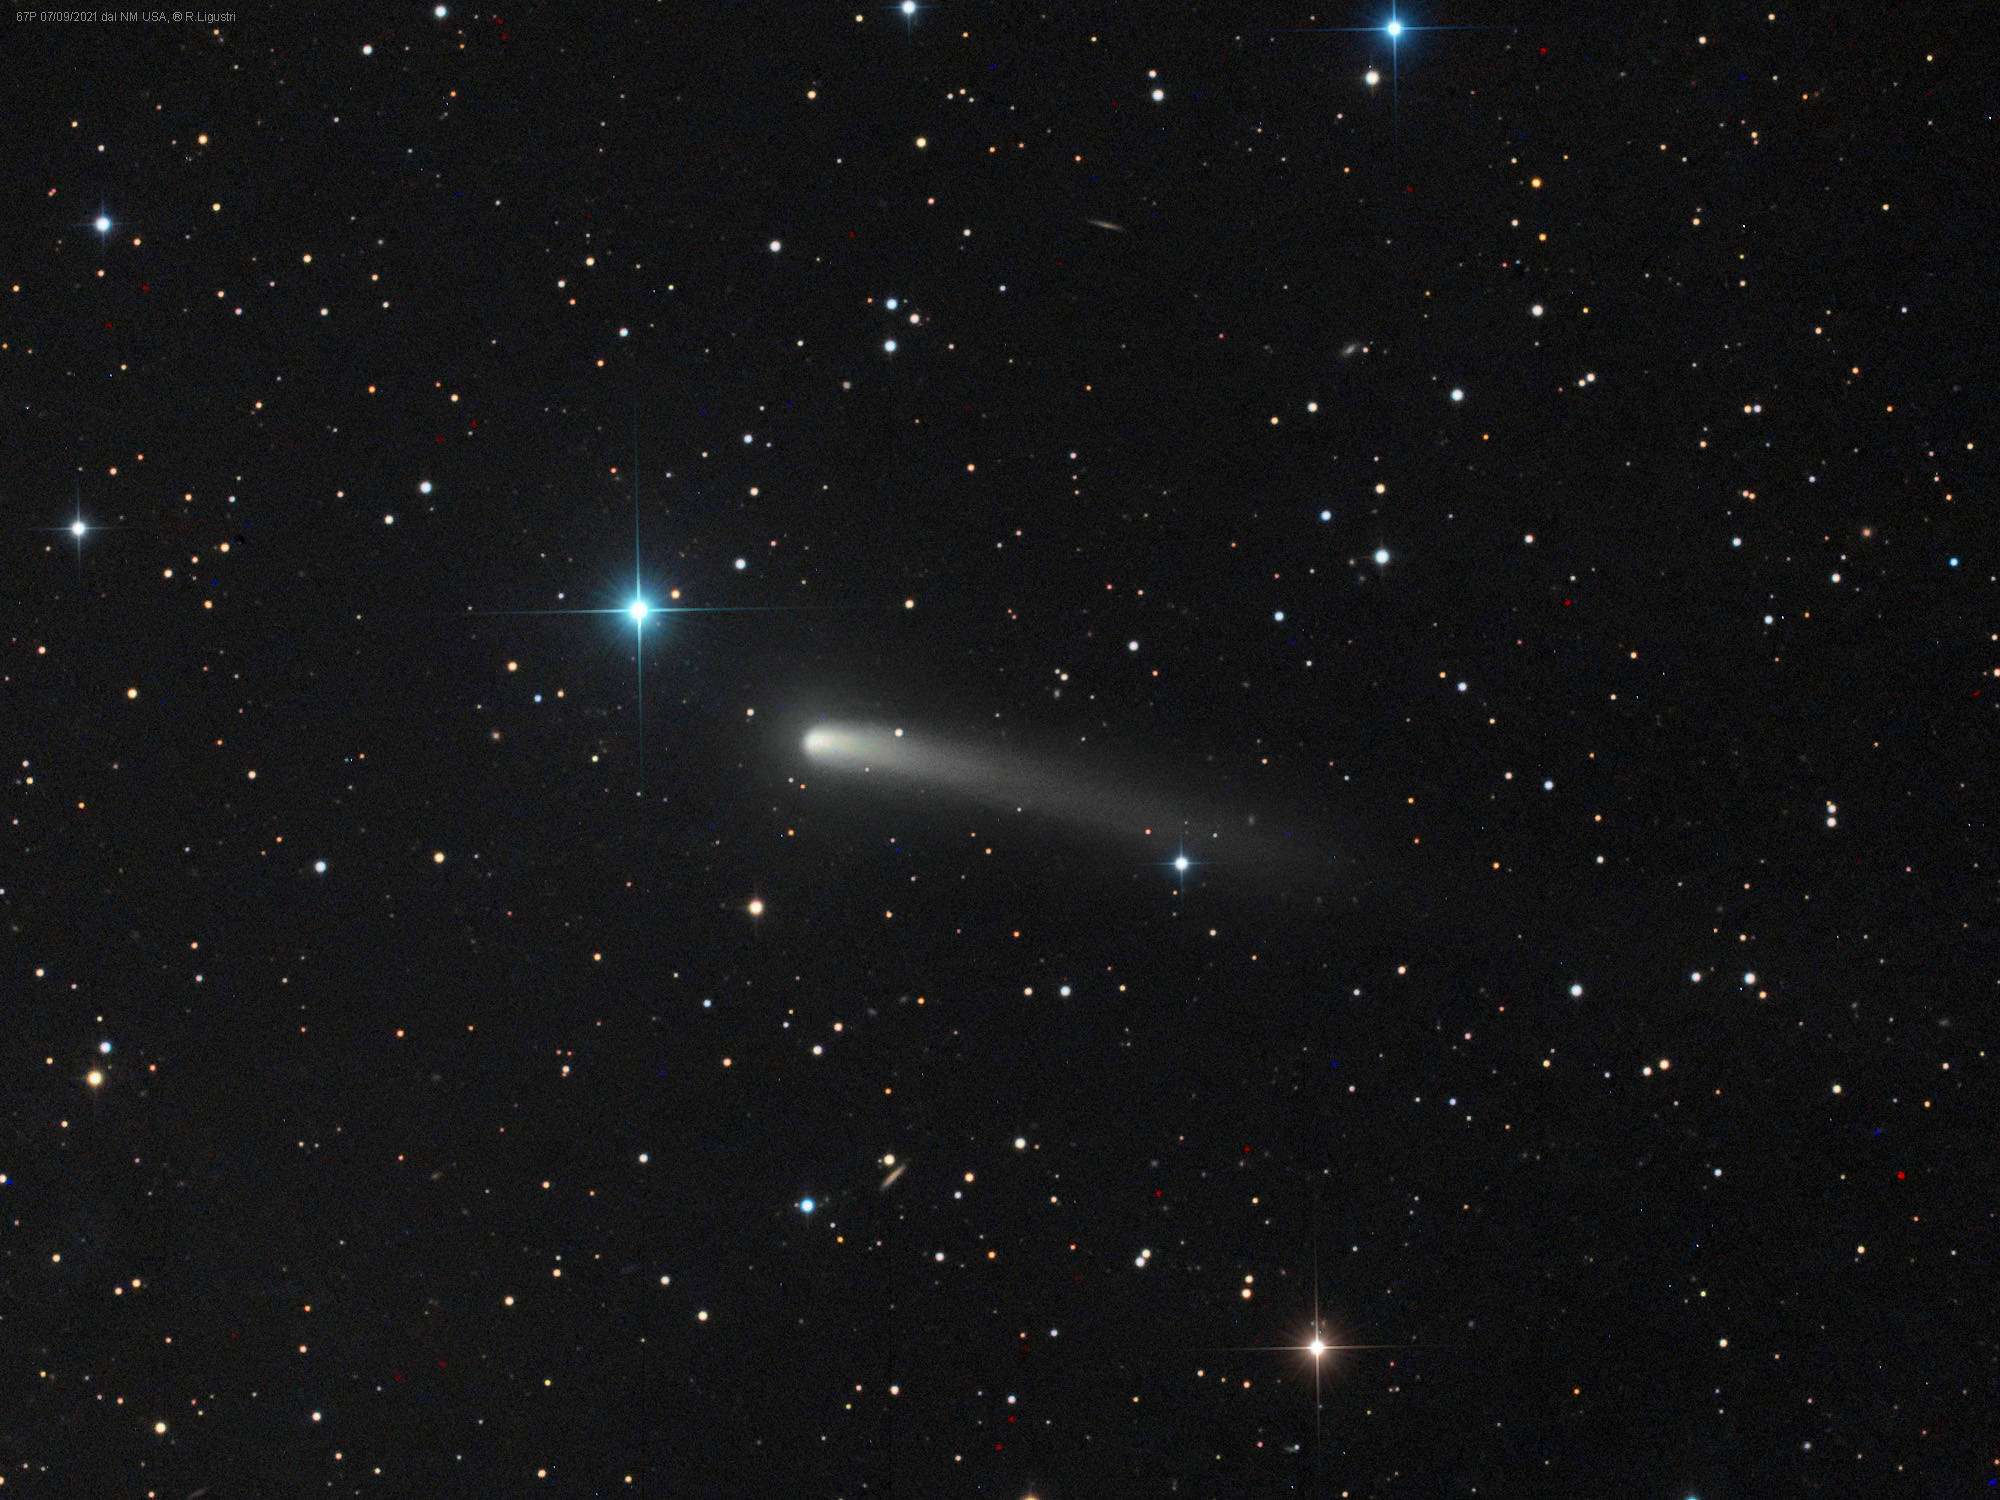 罗塞塔彗星进入视野，丘泽彗星掠过金牛座方向的背景恒星前方